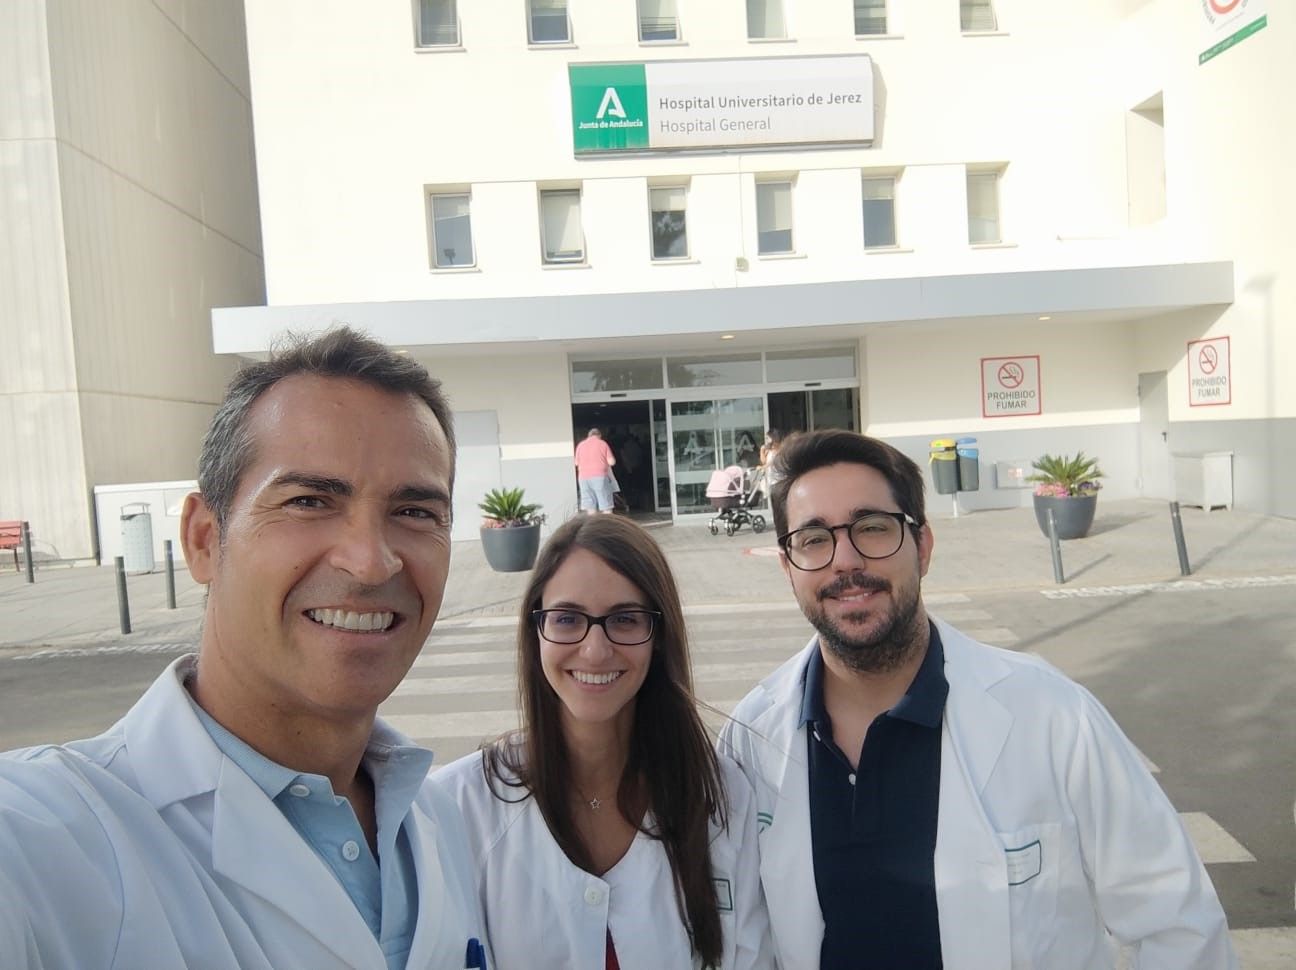 Profesionales del hospital universitario de Jerez que han participado en la investigación publicada en una revista internacional.